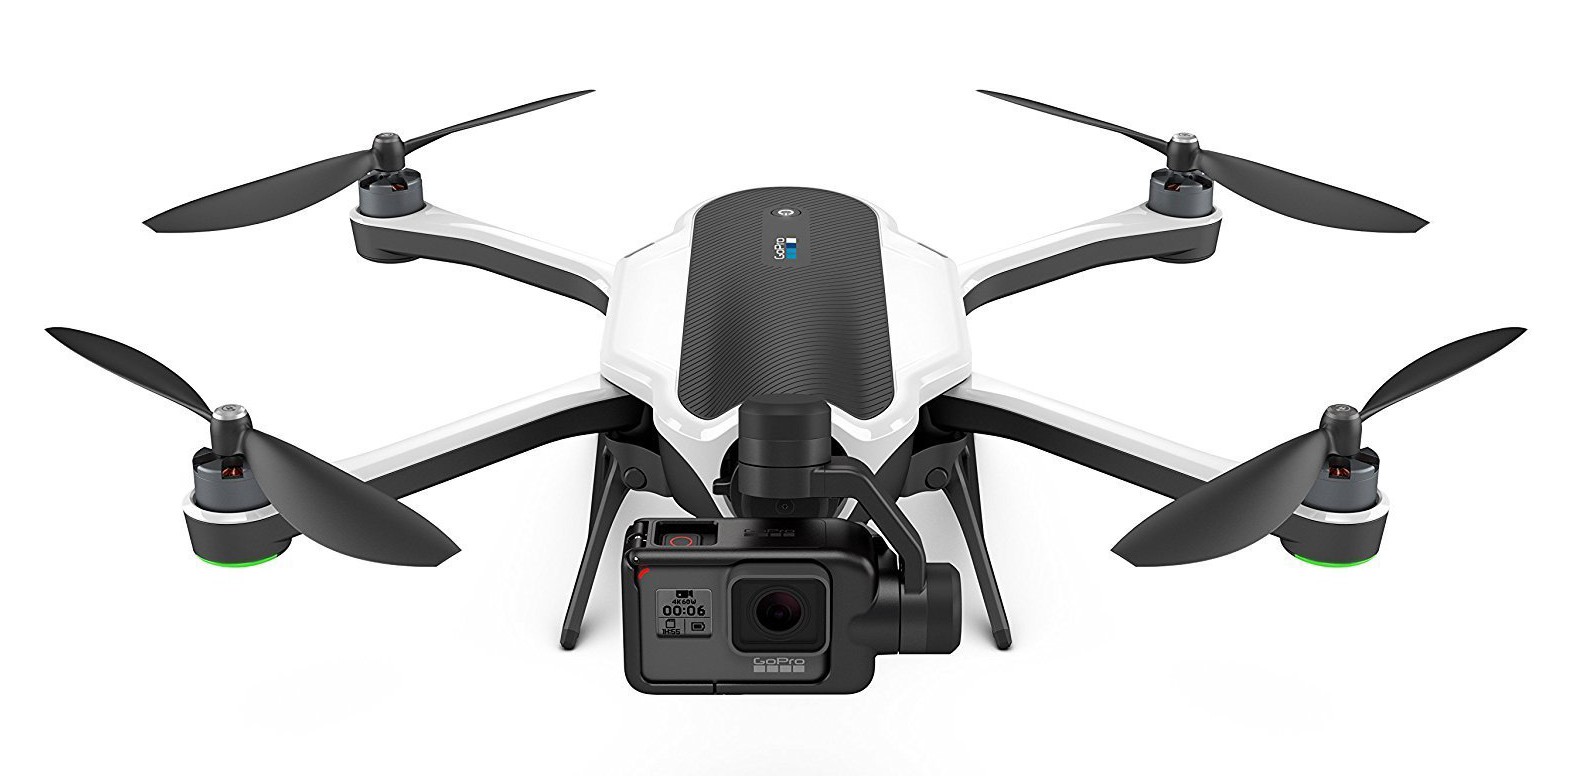 GoPro - Drone Karma + HERO6 Black - Drone with Stabilizer + 